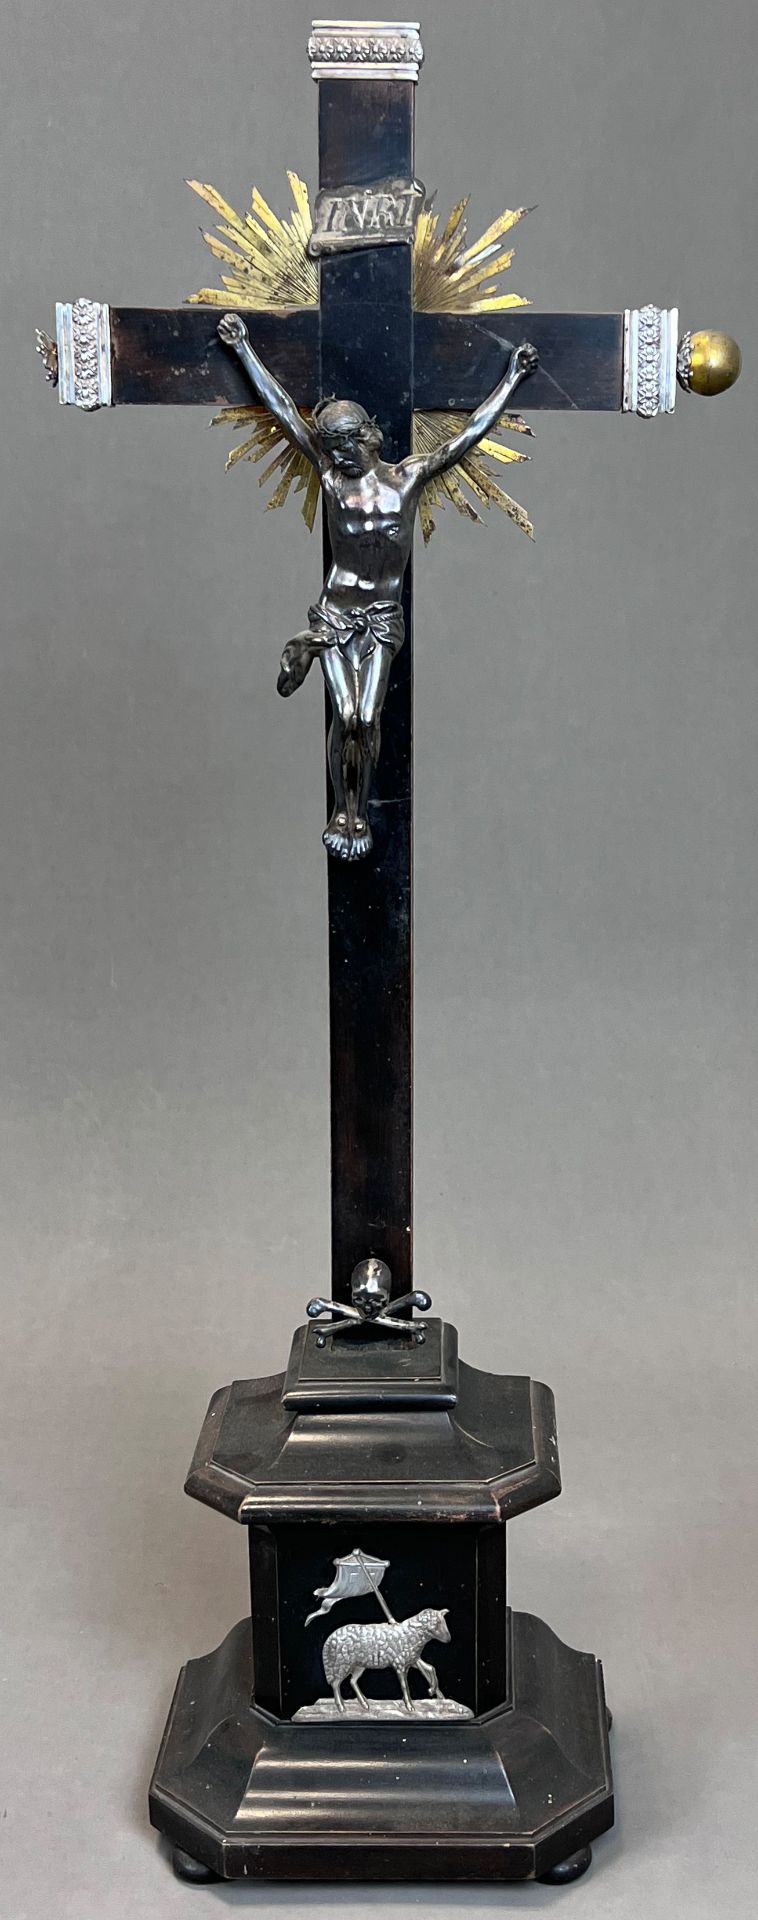 Standkreuz. Altarkreuz mit Metall-Applikationen. 19. Jahrhundert. Deutschland.